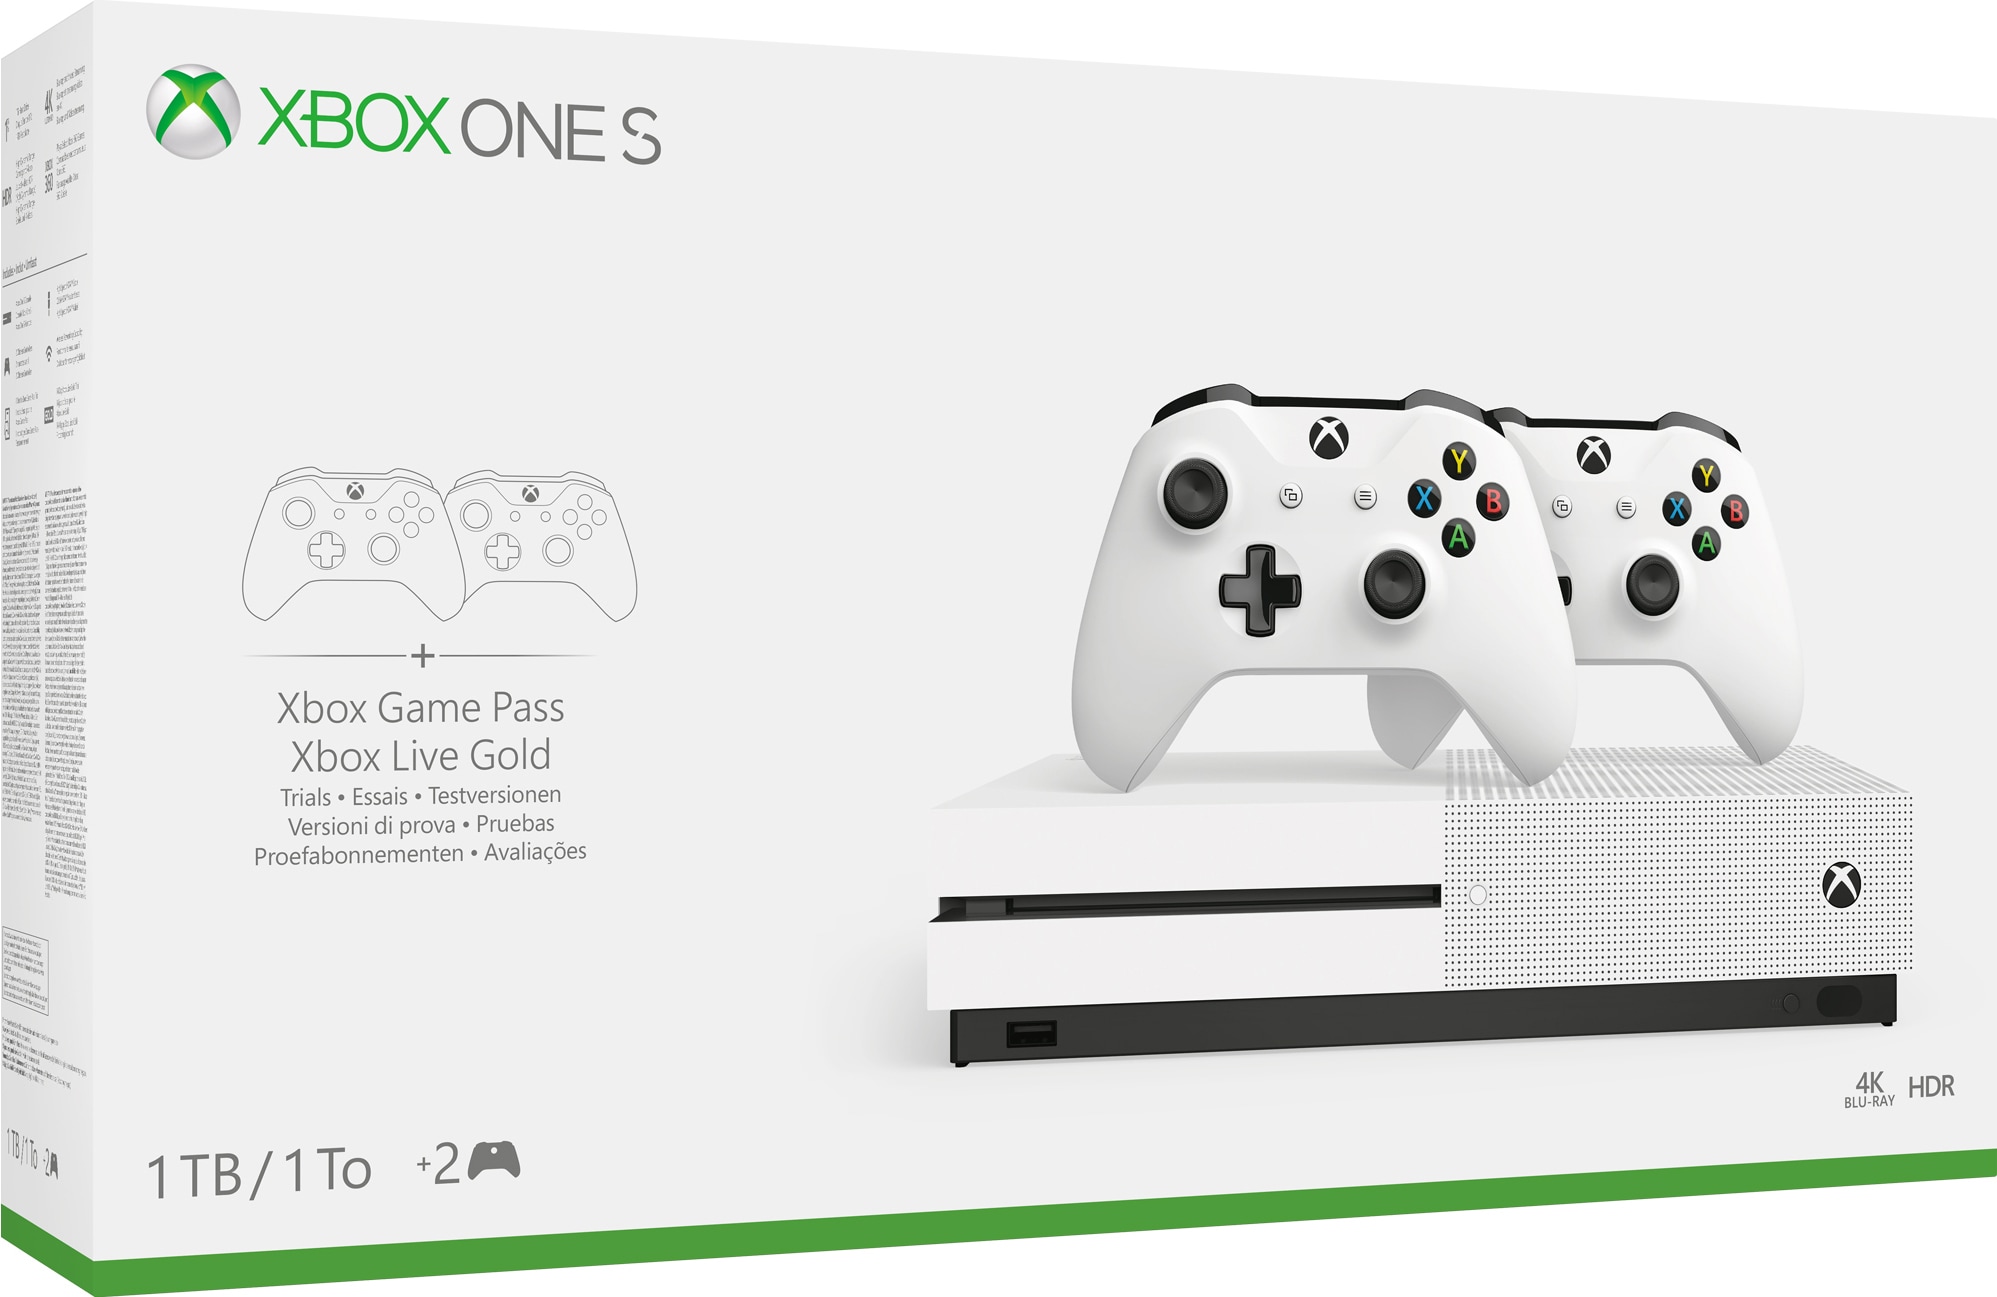 Best pris på Microsoft Xbox One X 1TB - Se priser før kjøp i Prisguiden